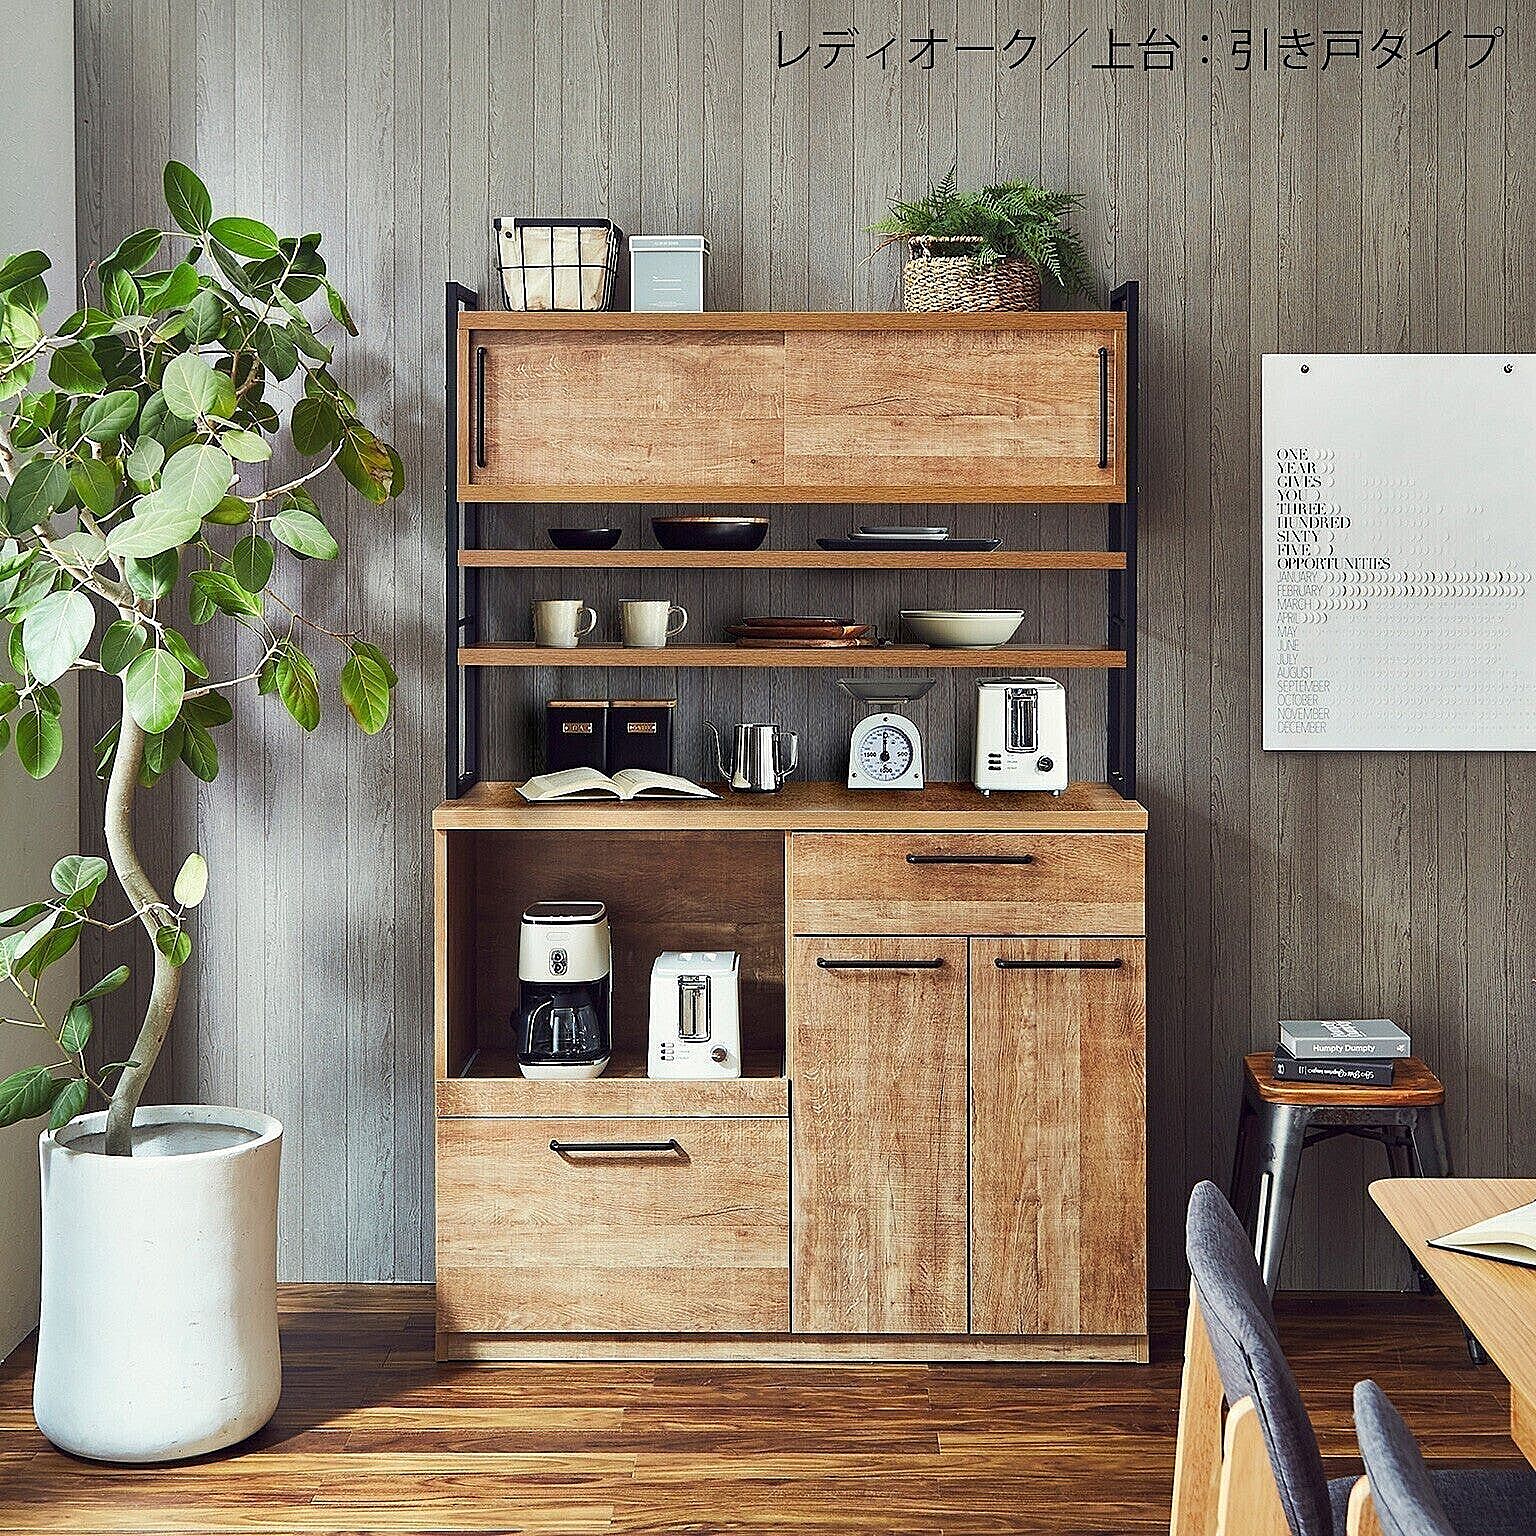 食器棚 レンジ台 レンジボード 収納 アイン 幅119.7cm 完成品 日本製 アイアンフレーム キッチン収納